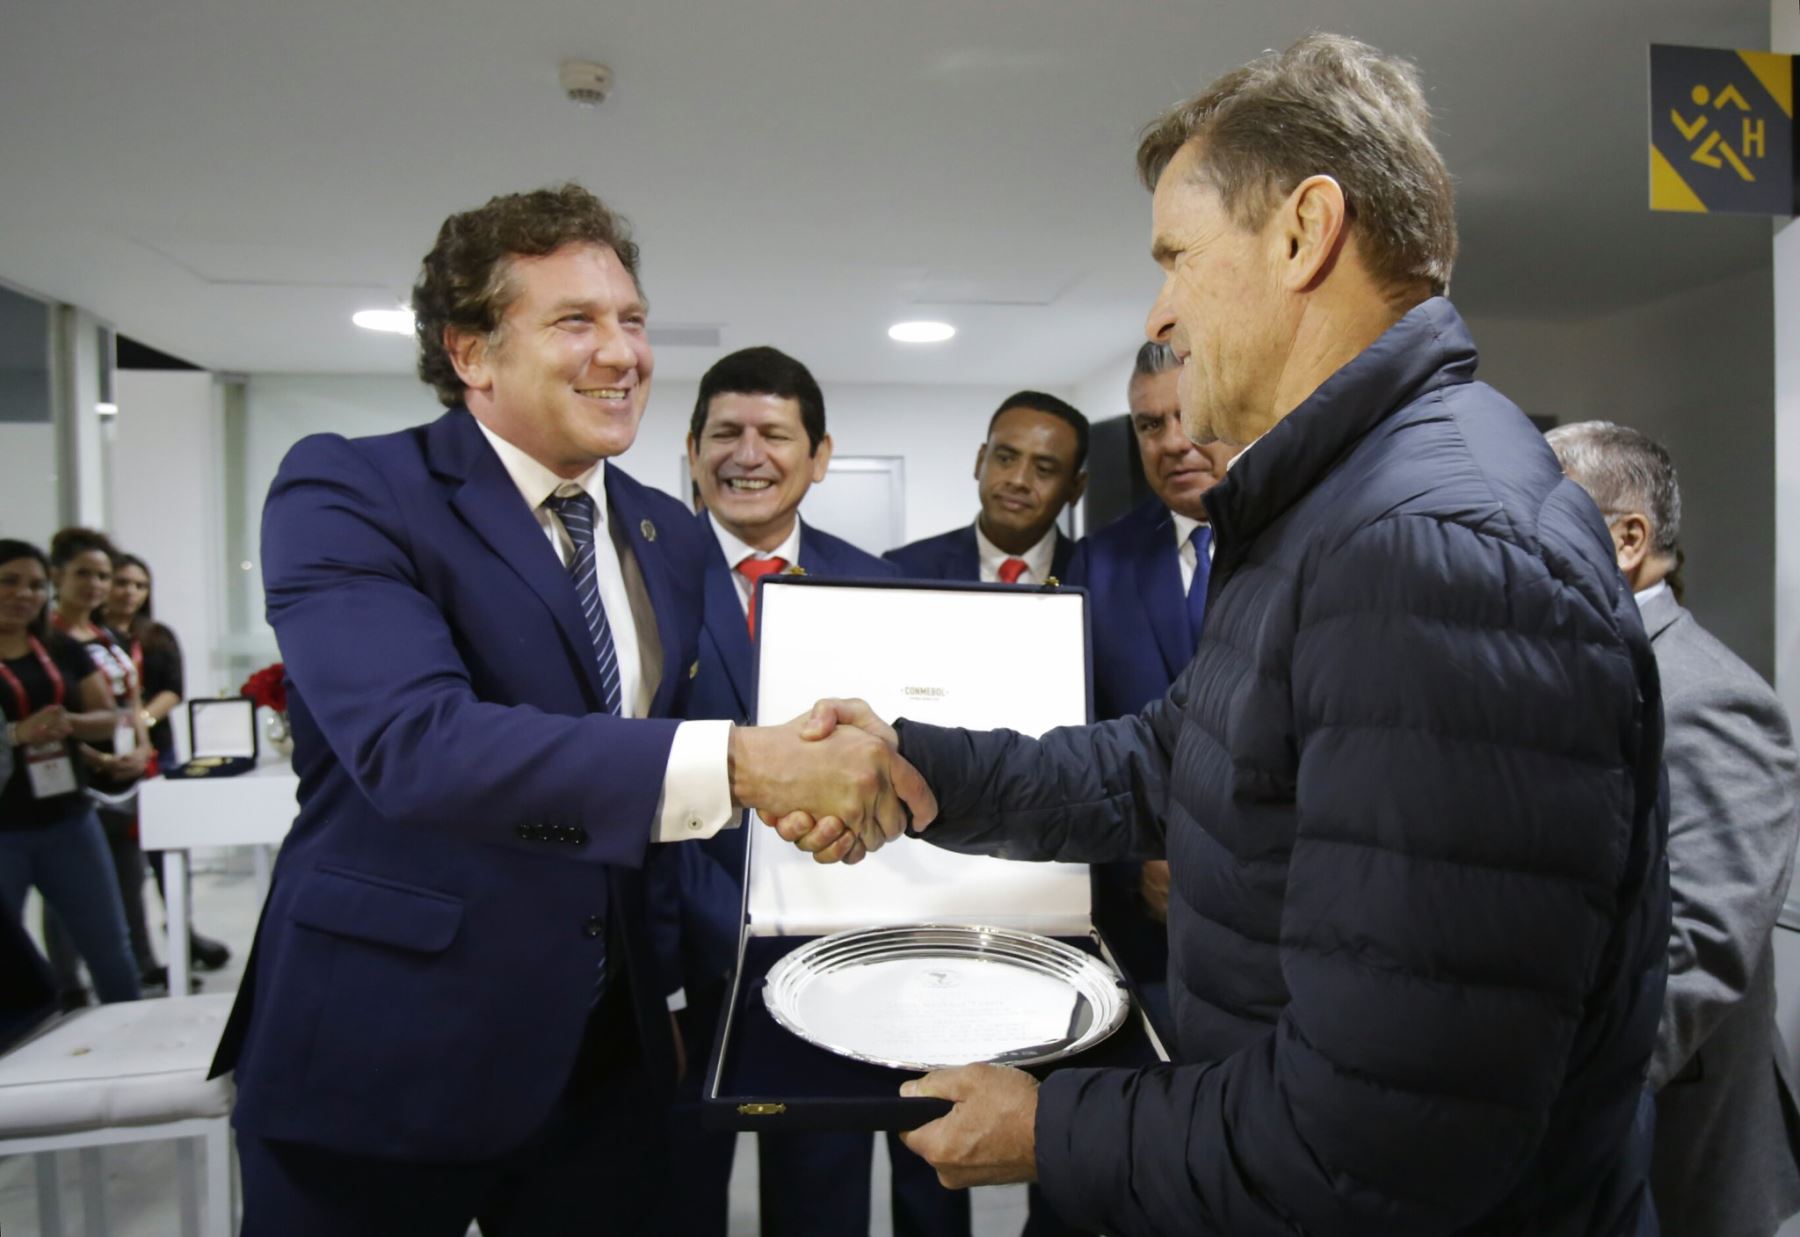 Lima 2019 recibió reconocimiento de la CONMEBOL y la FPF